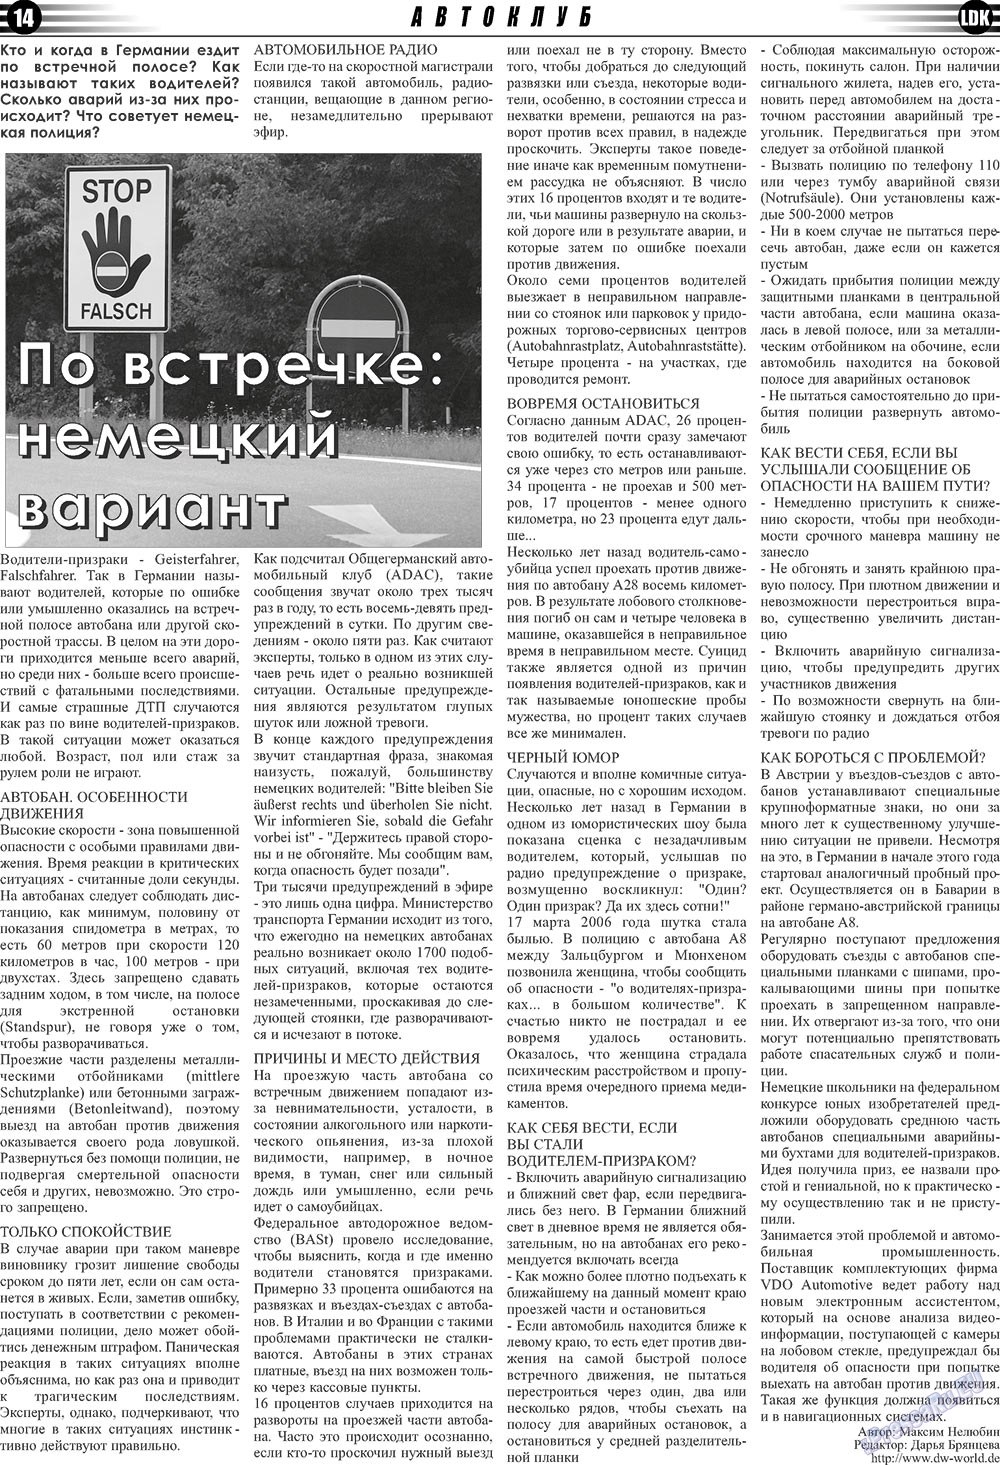 LDK по-русски (газета). 2011 год, номер 1, стр. 14